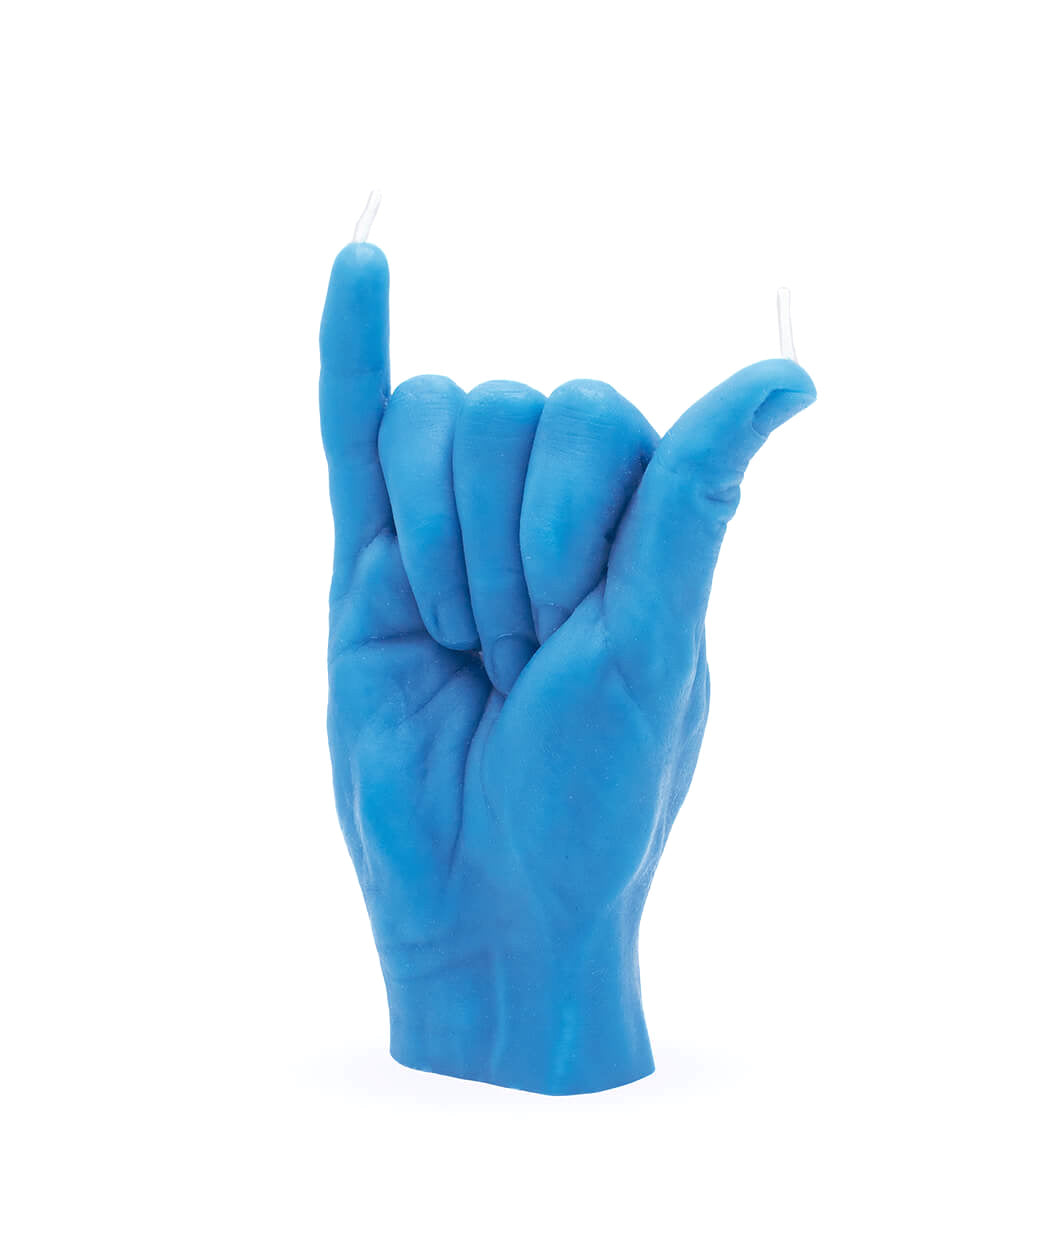 vela em formato de mão com o símbolo havaiano Shaka em azul